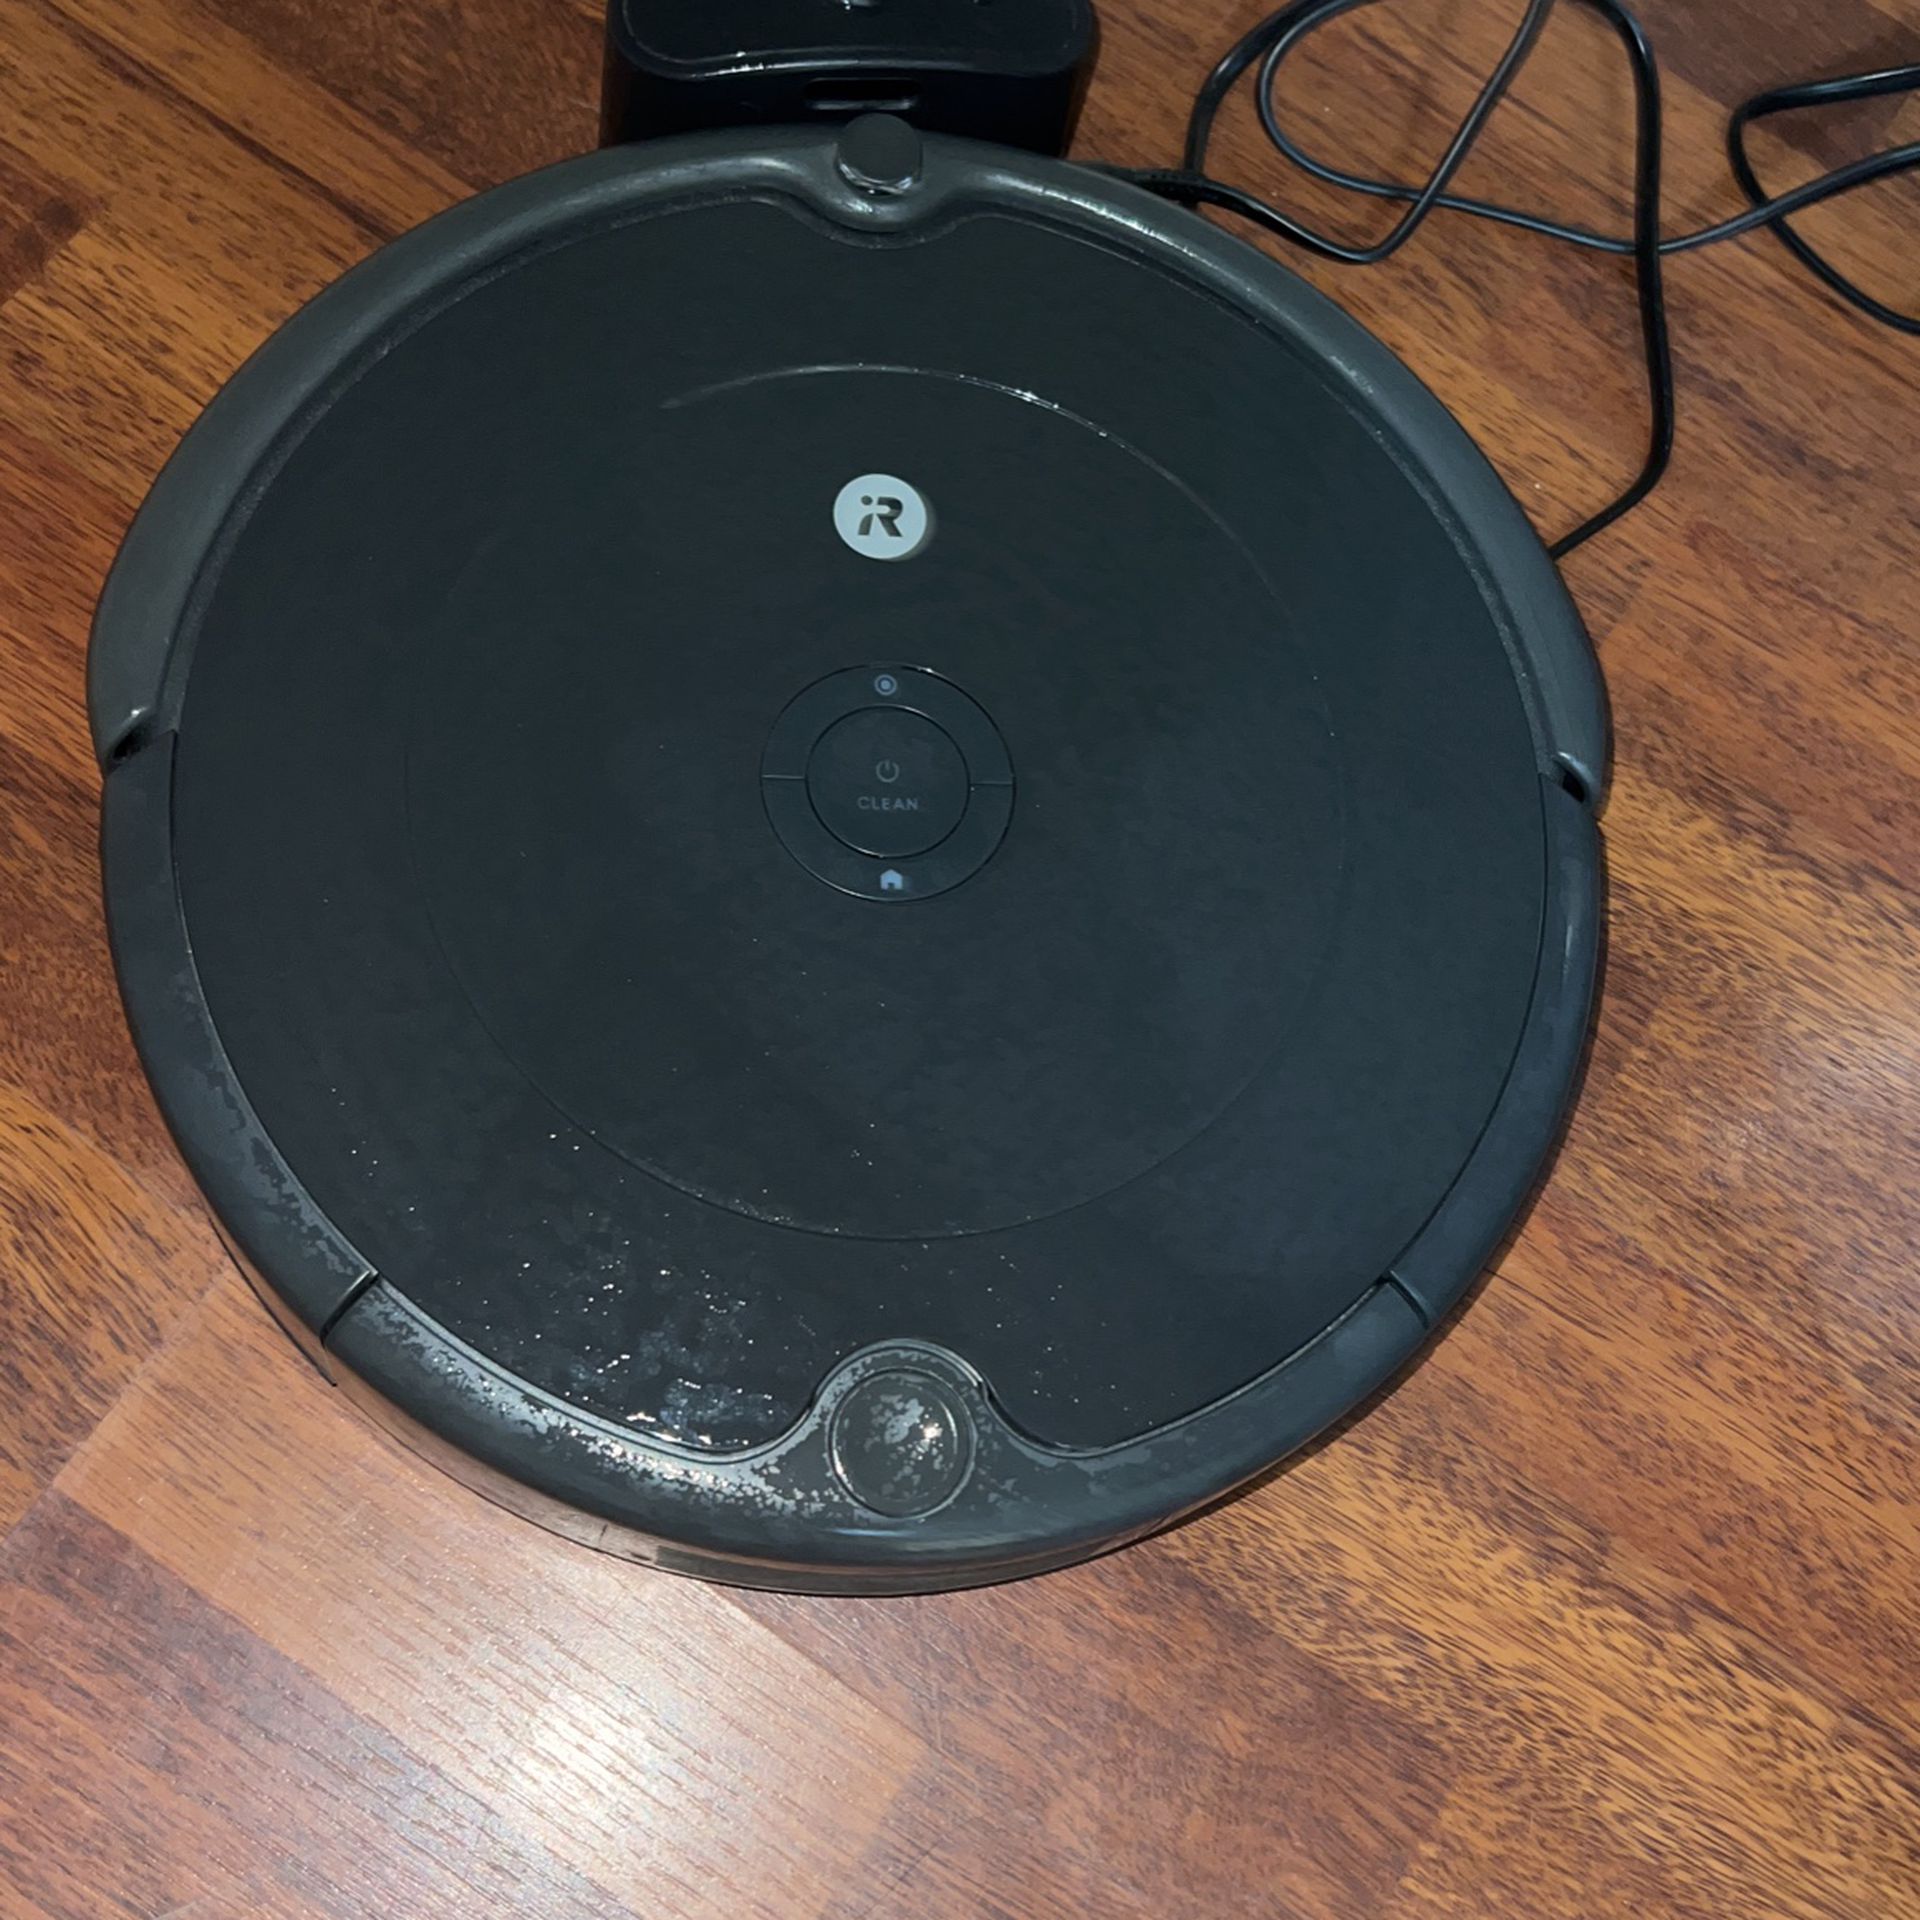 Roomba 